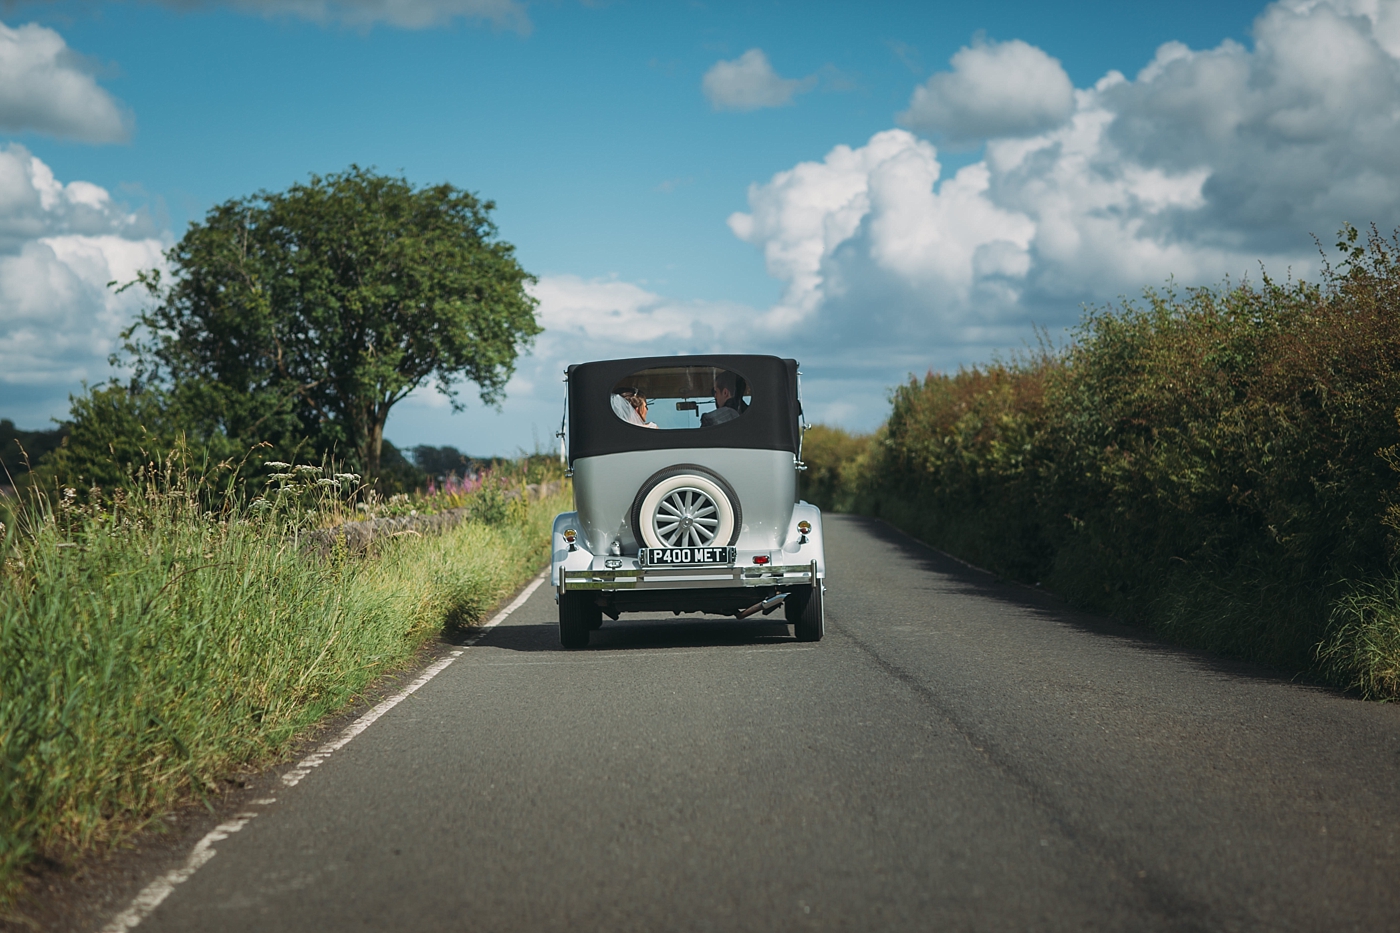 Met Wedding Car - Vintage car on country road